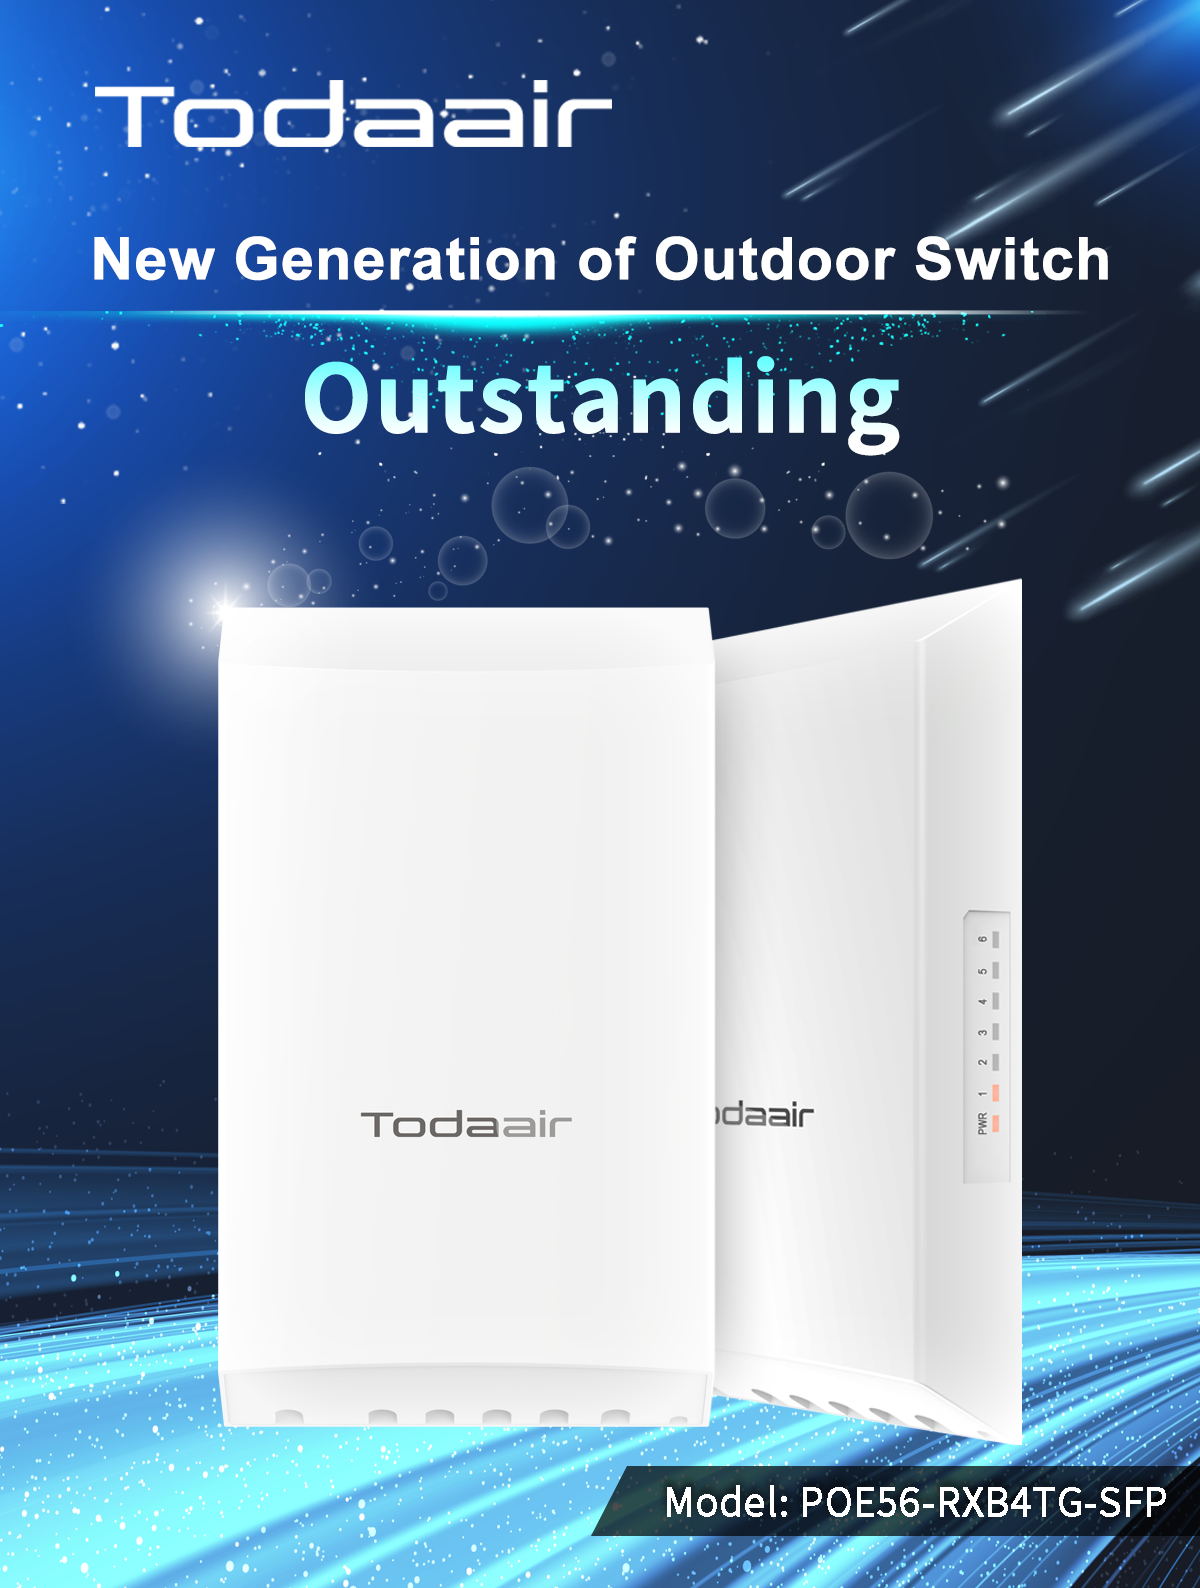 Todaair new outdoor switch